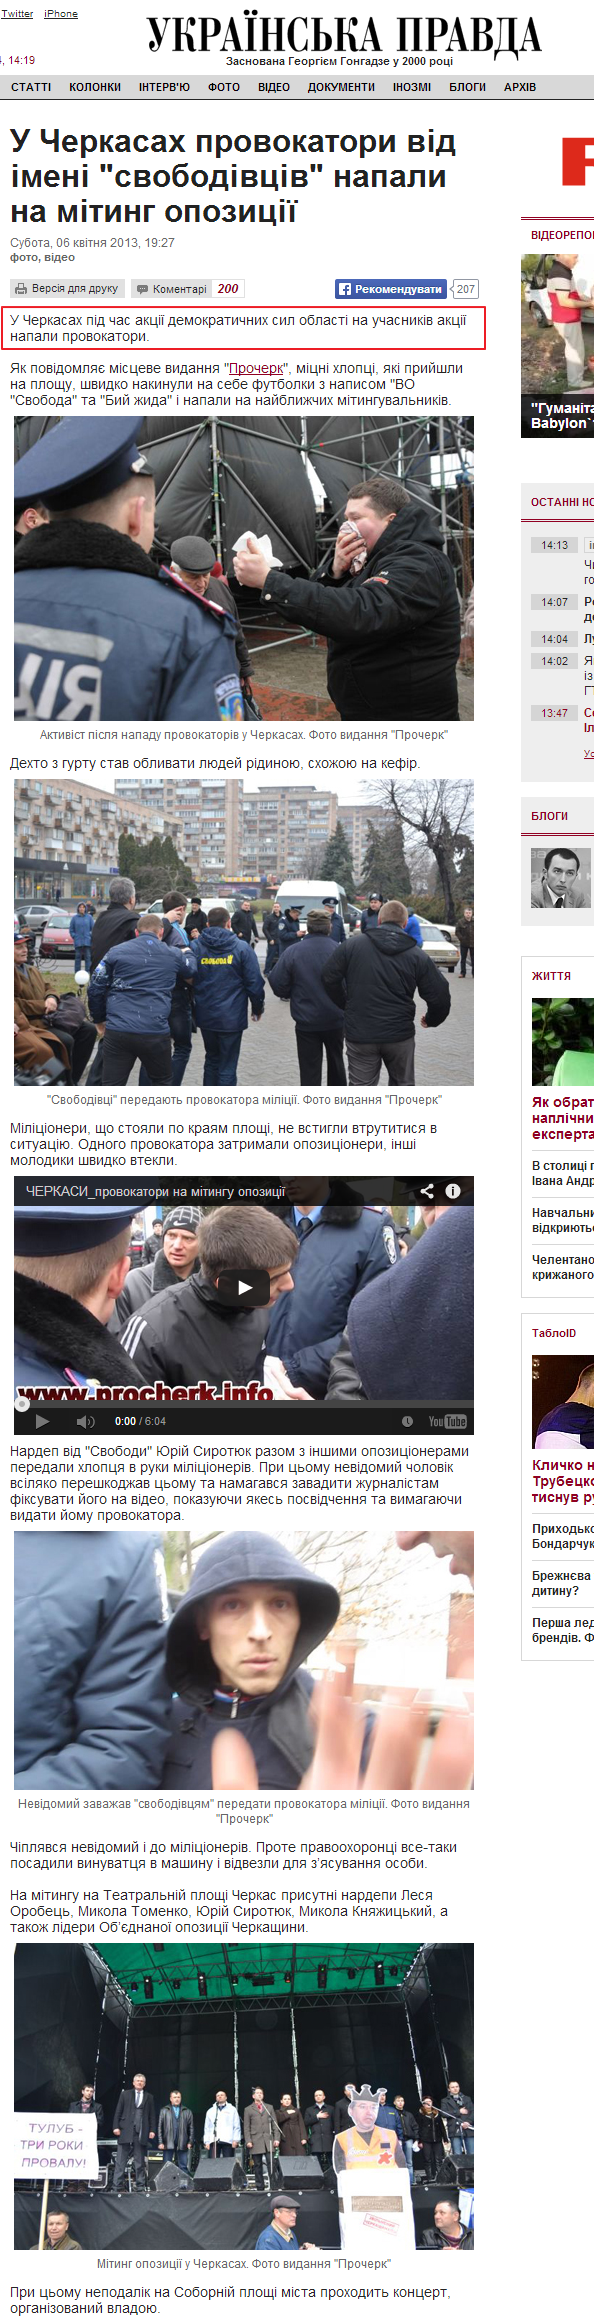 http://www.pravda.com.ua/news/2013/04/6/6987577/